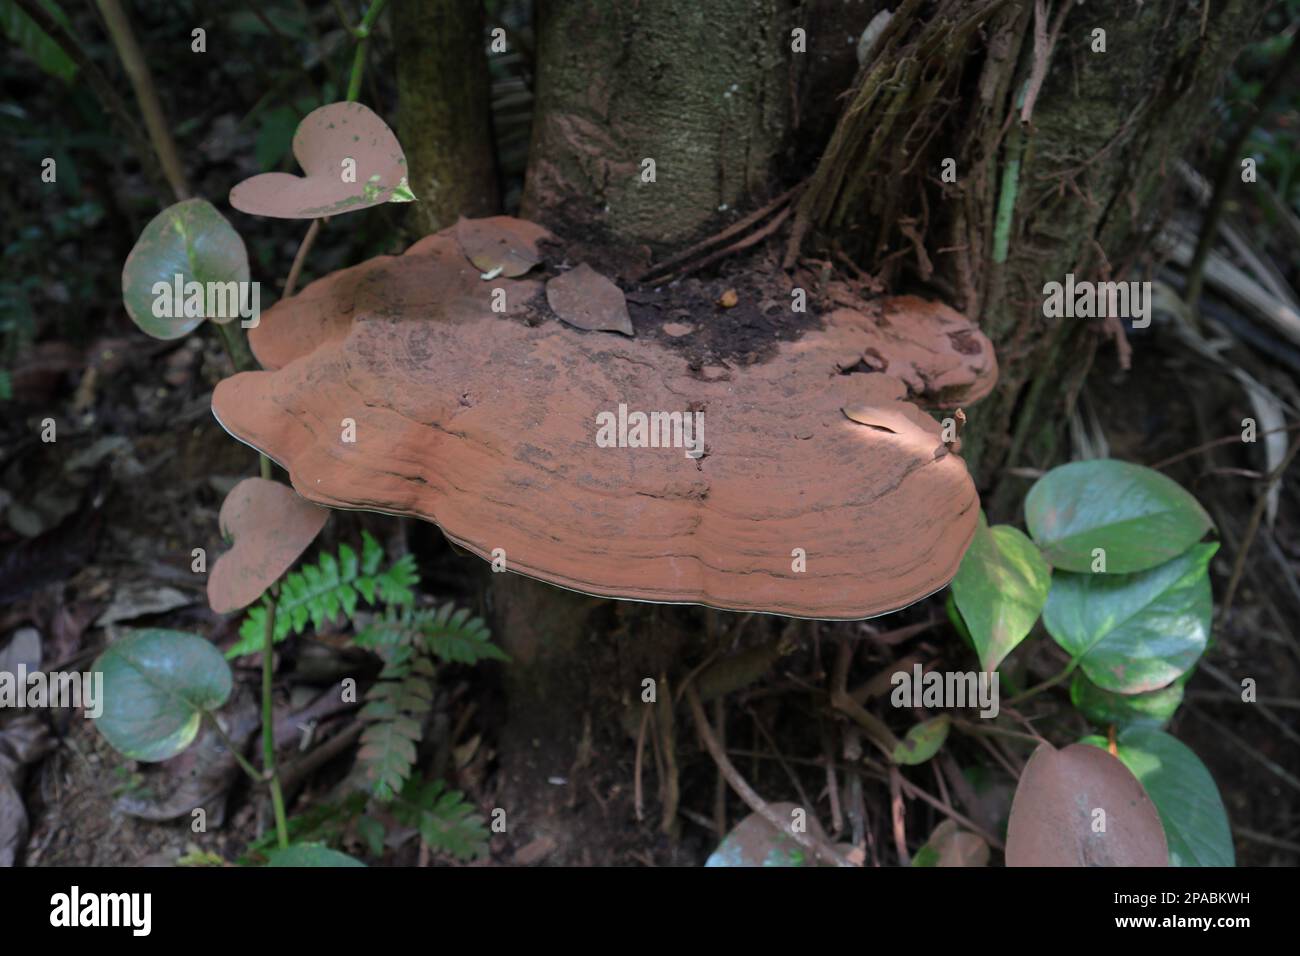 Nahaufnahme einer oberen rötlichen Oberfläche eines Pilzes (Ganoderma Applanatum), der auf einem sterbenden Baumstamm in einem wilden Feuchtigkeitsgebiet wächst Stockfoto